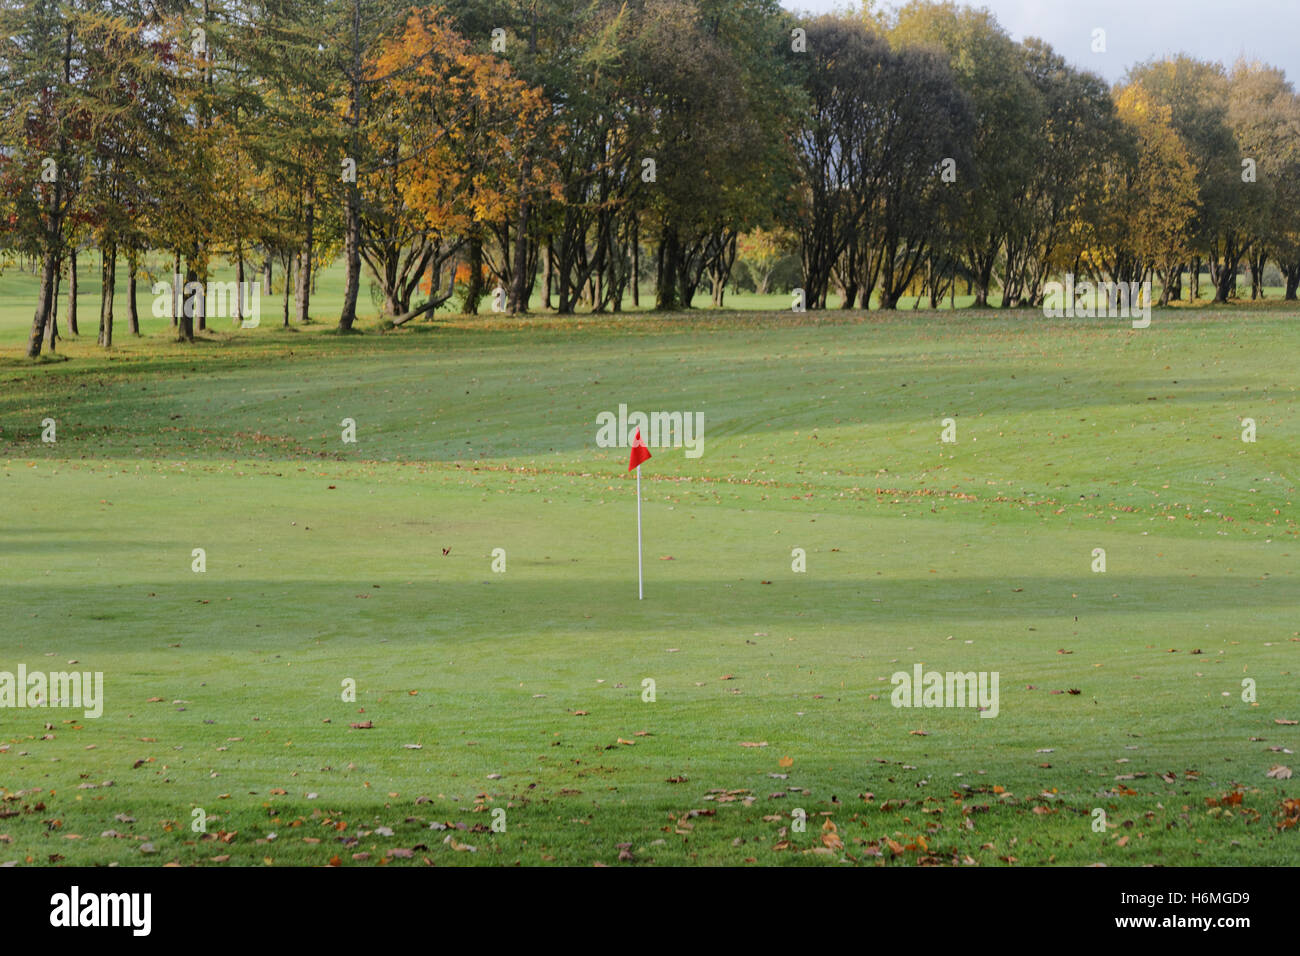 Campo de golf de knightswood en el distrito de Glasgow Bandera roja en el campo de golf de 18 hoyos o último hoyo en la perspectiva verde del campo de 9 hoyos Foto de stock